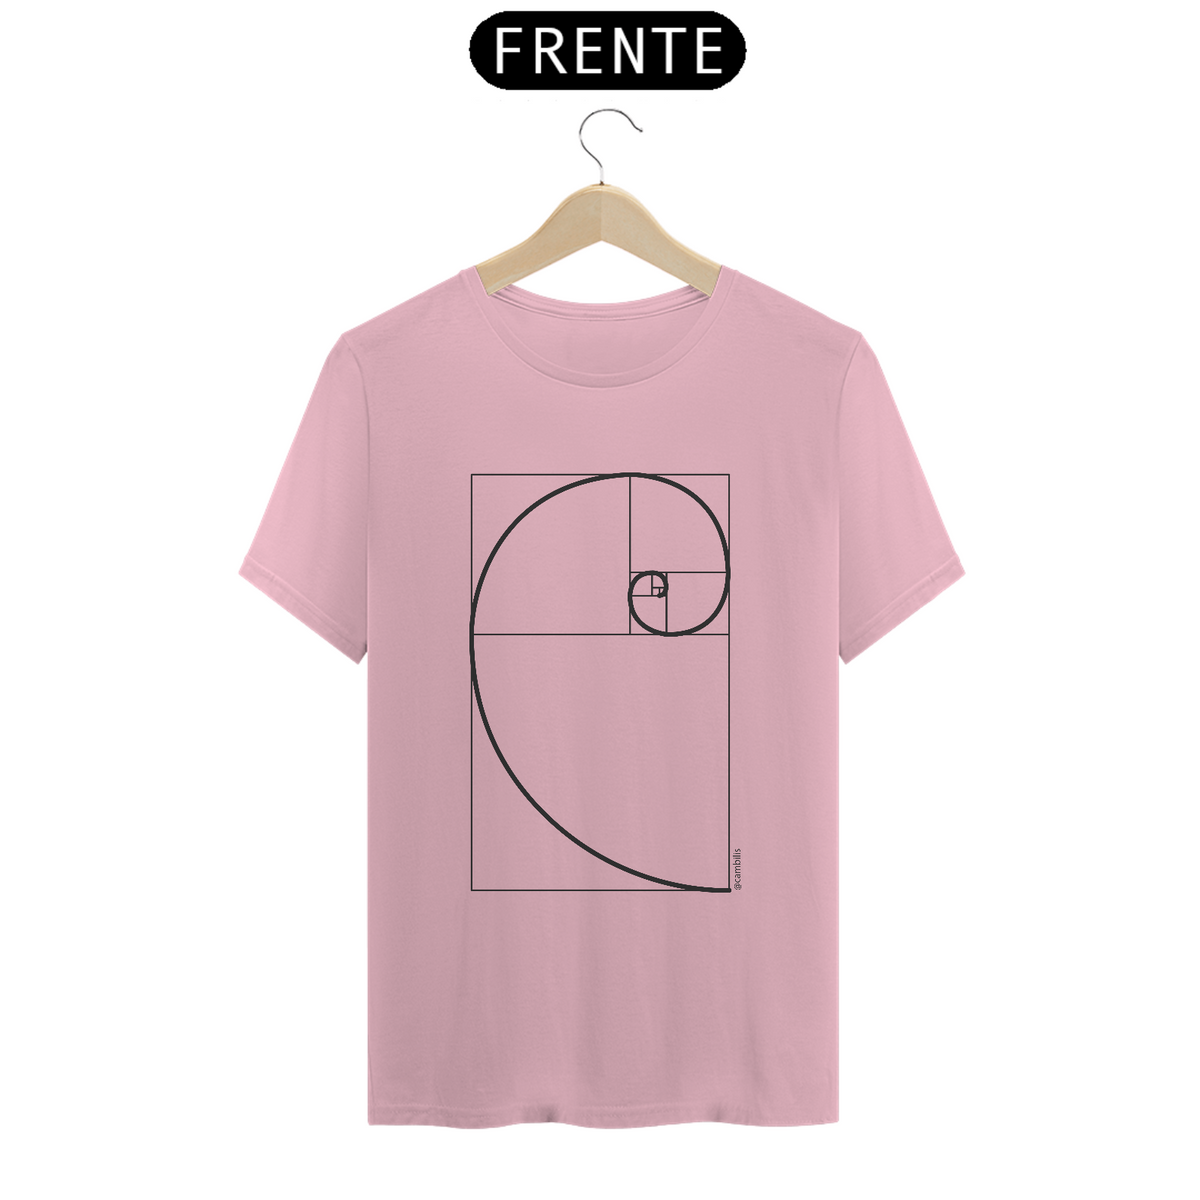 Nome do produto: Camiseta Sequência Fibonacci